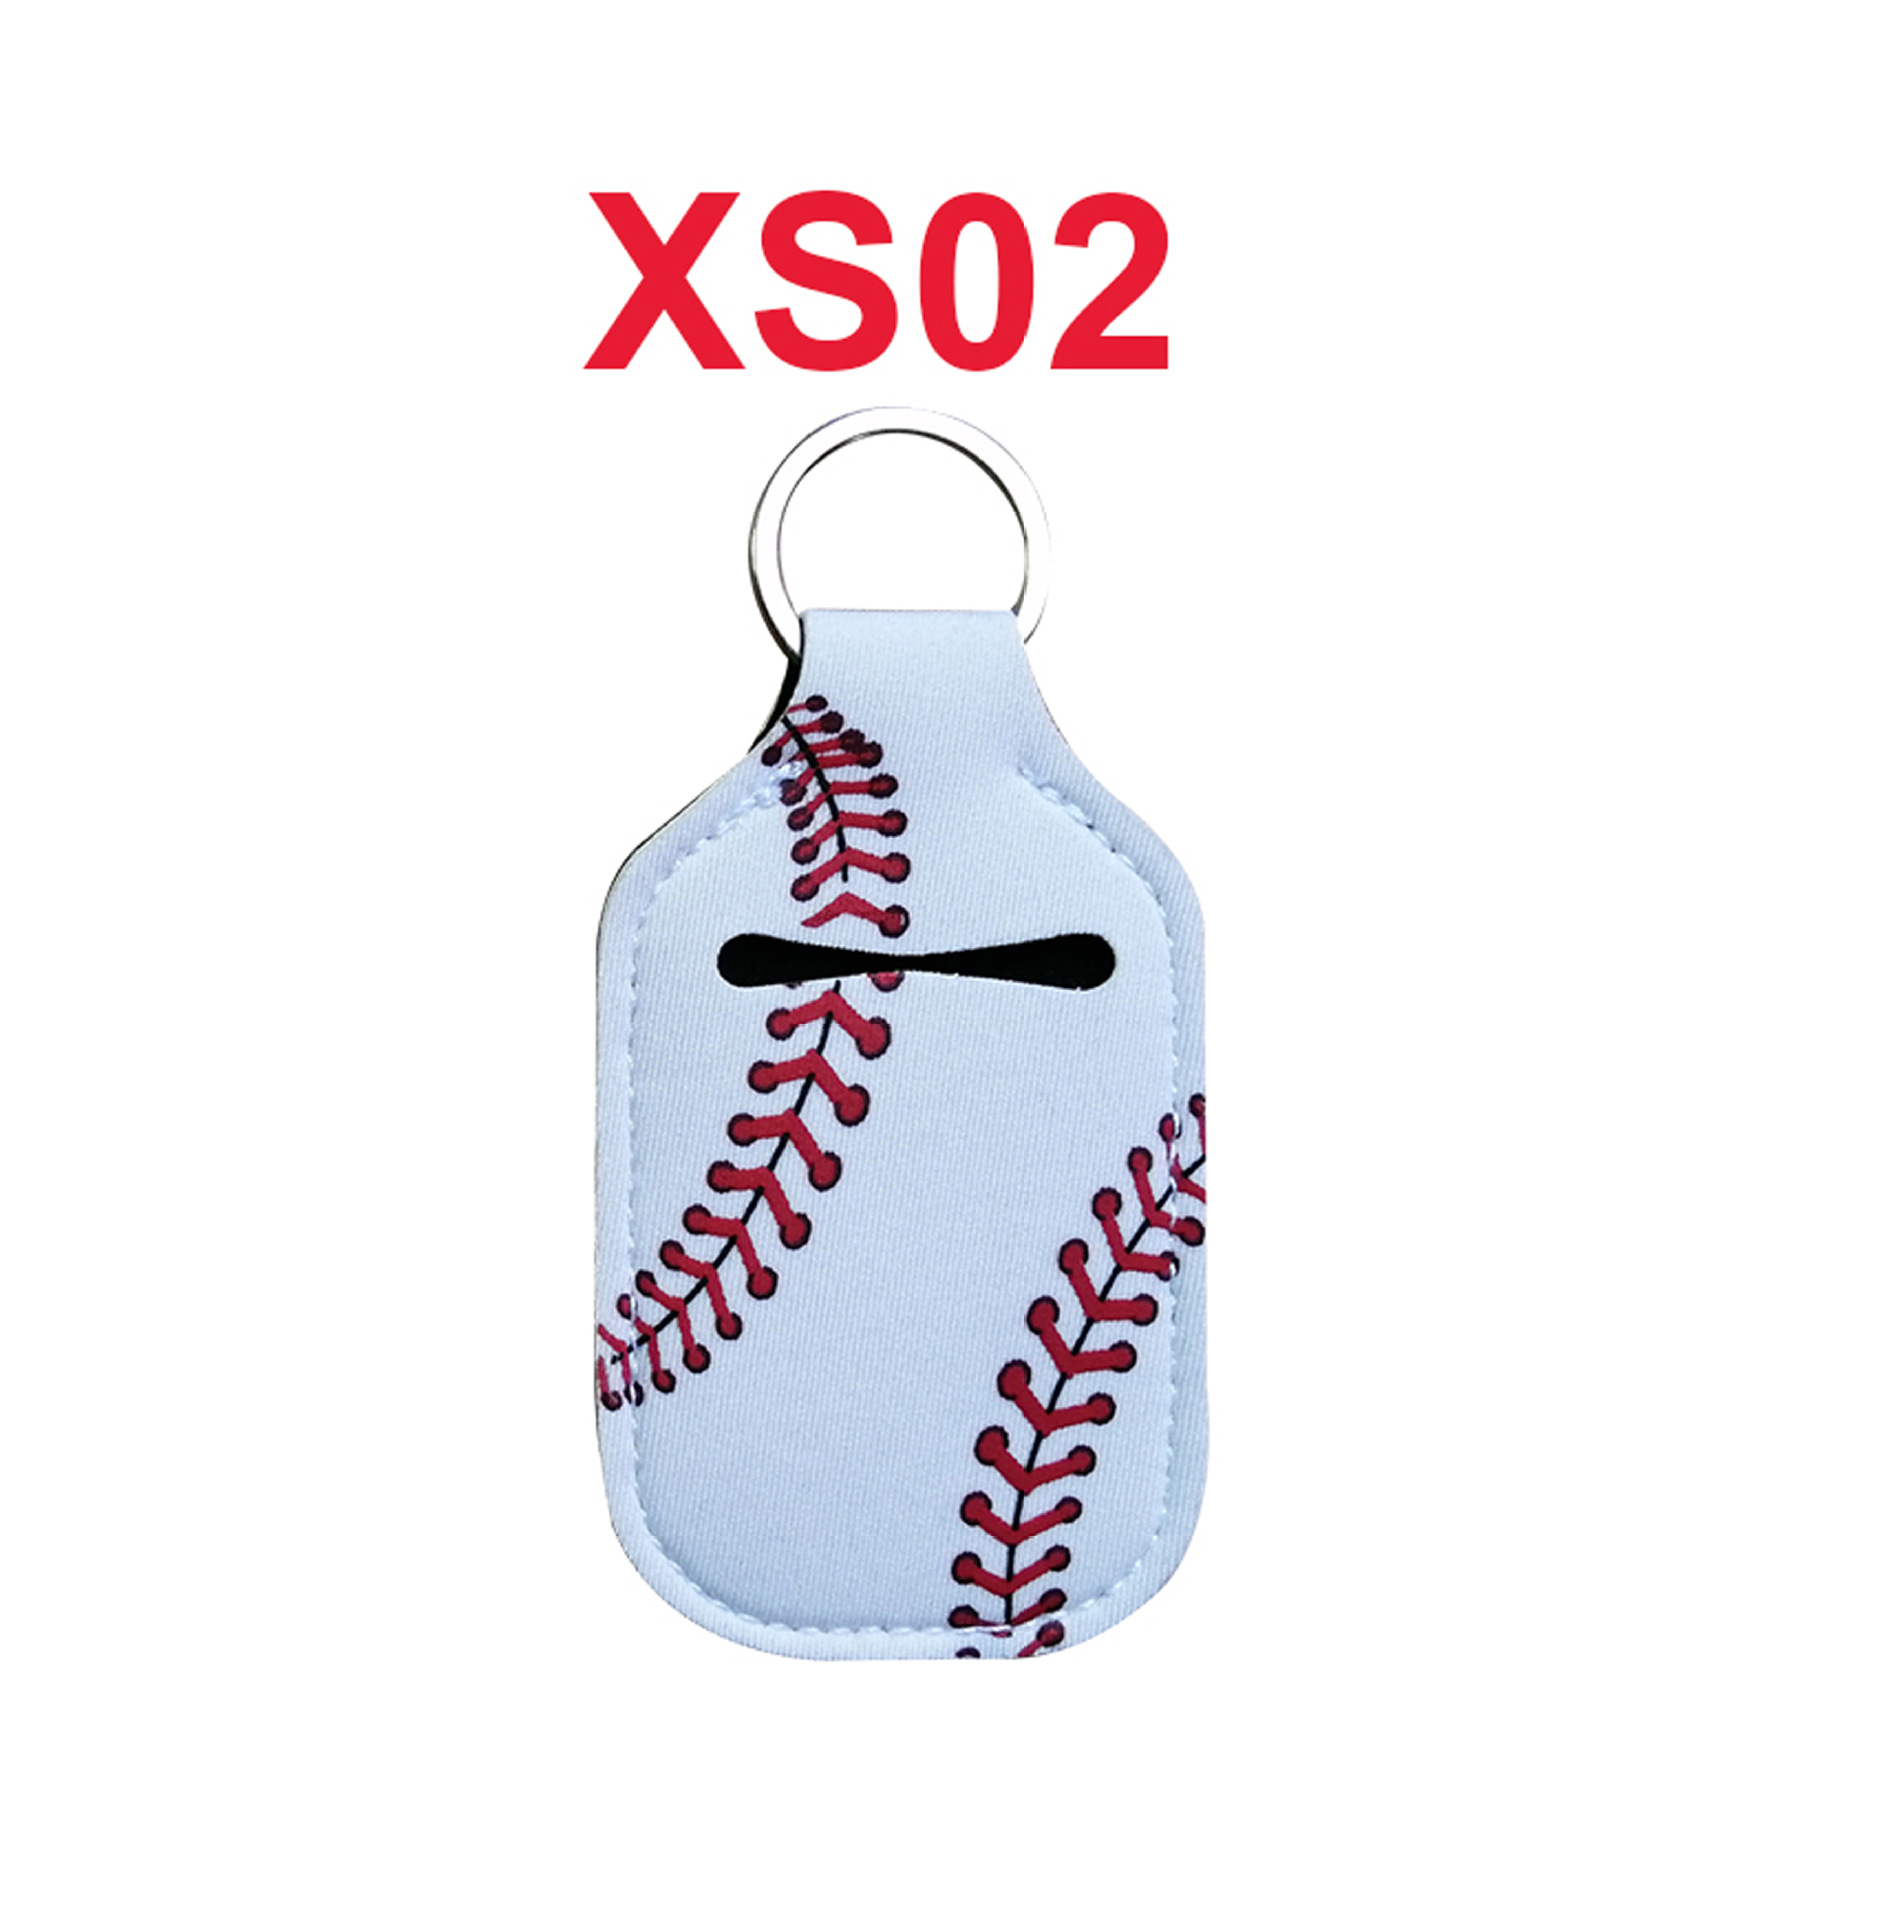 XS02